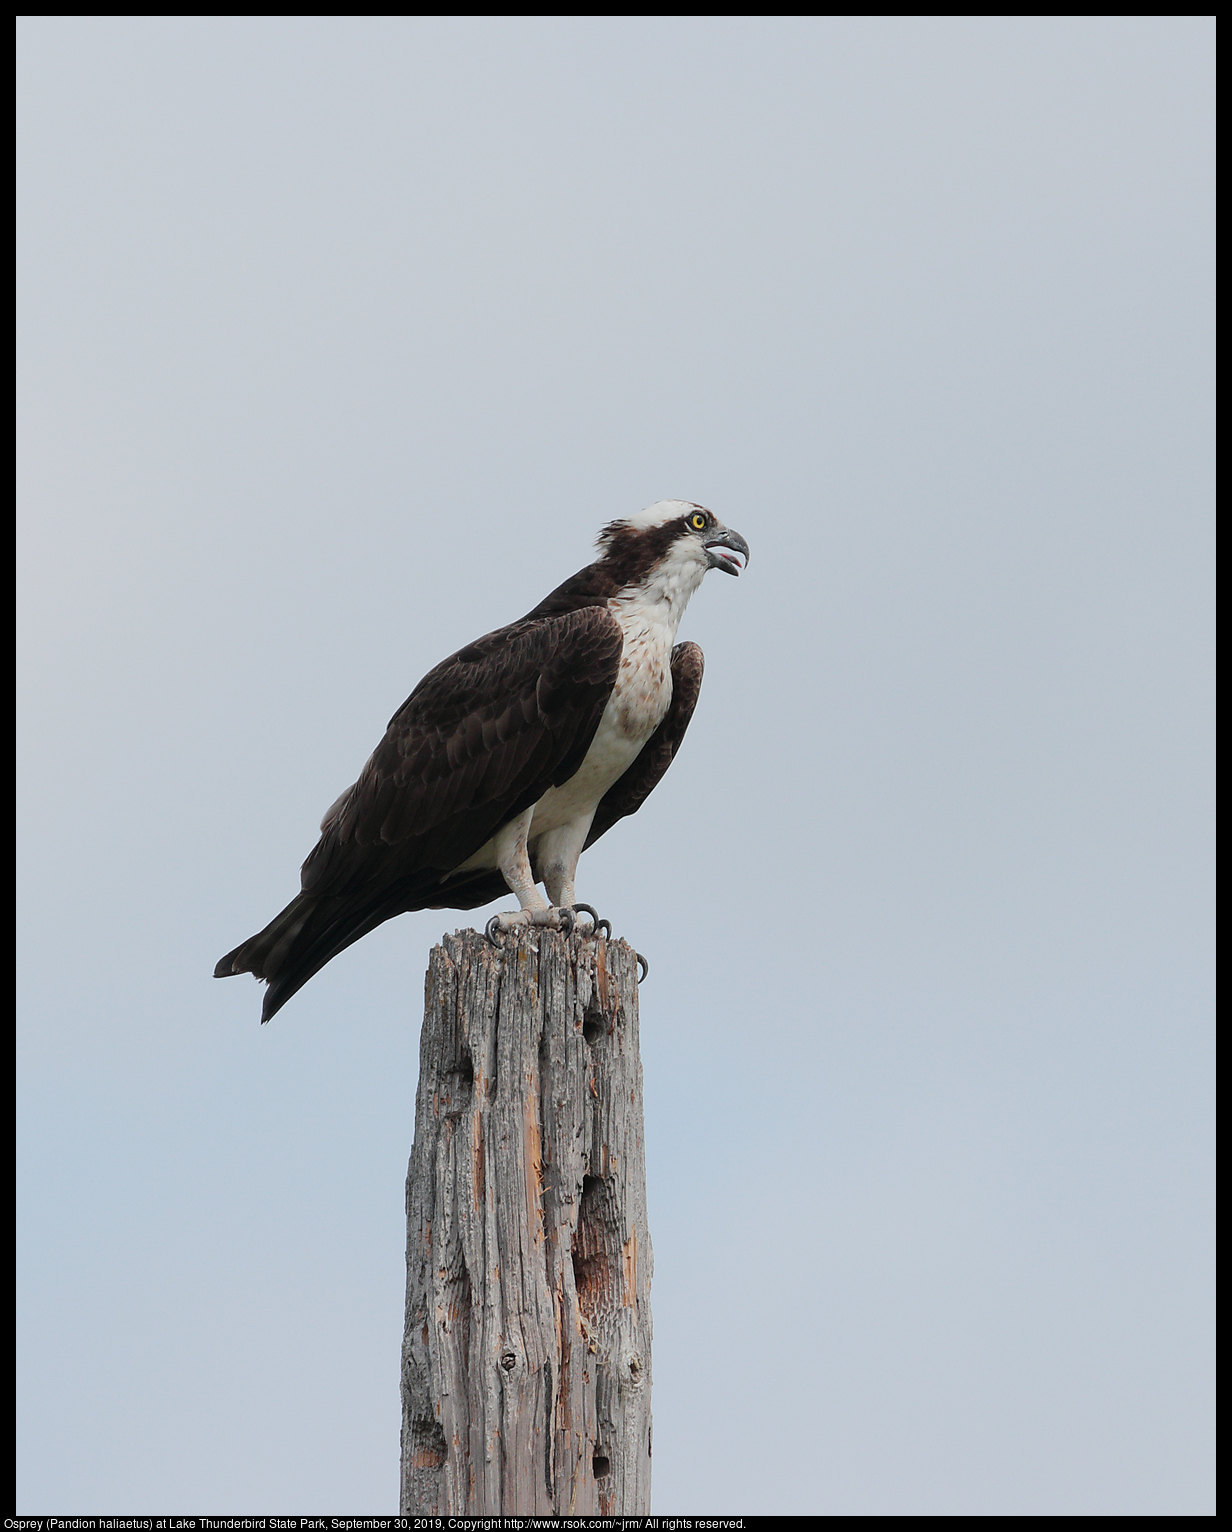 Osprey (Pandion haliaetus) at Lake Thunderbird State Park, September 30, 2019